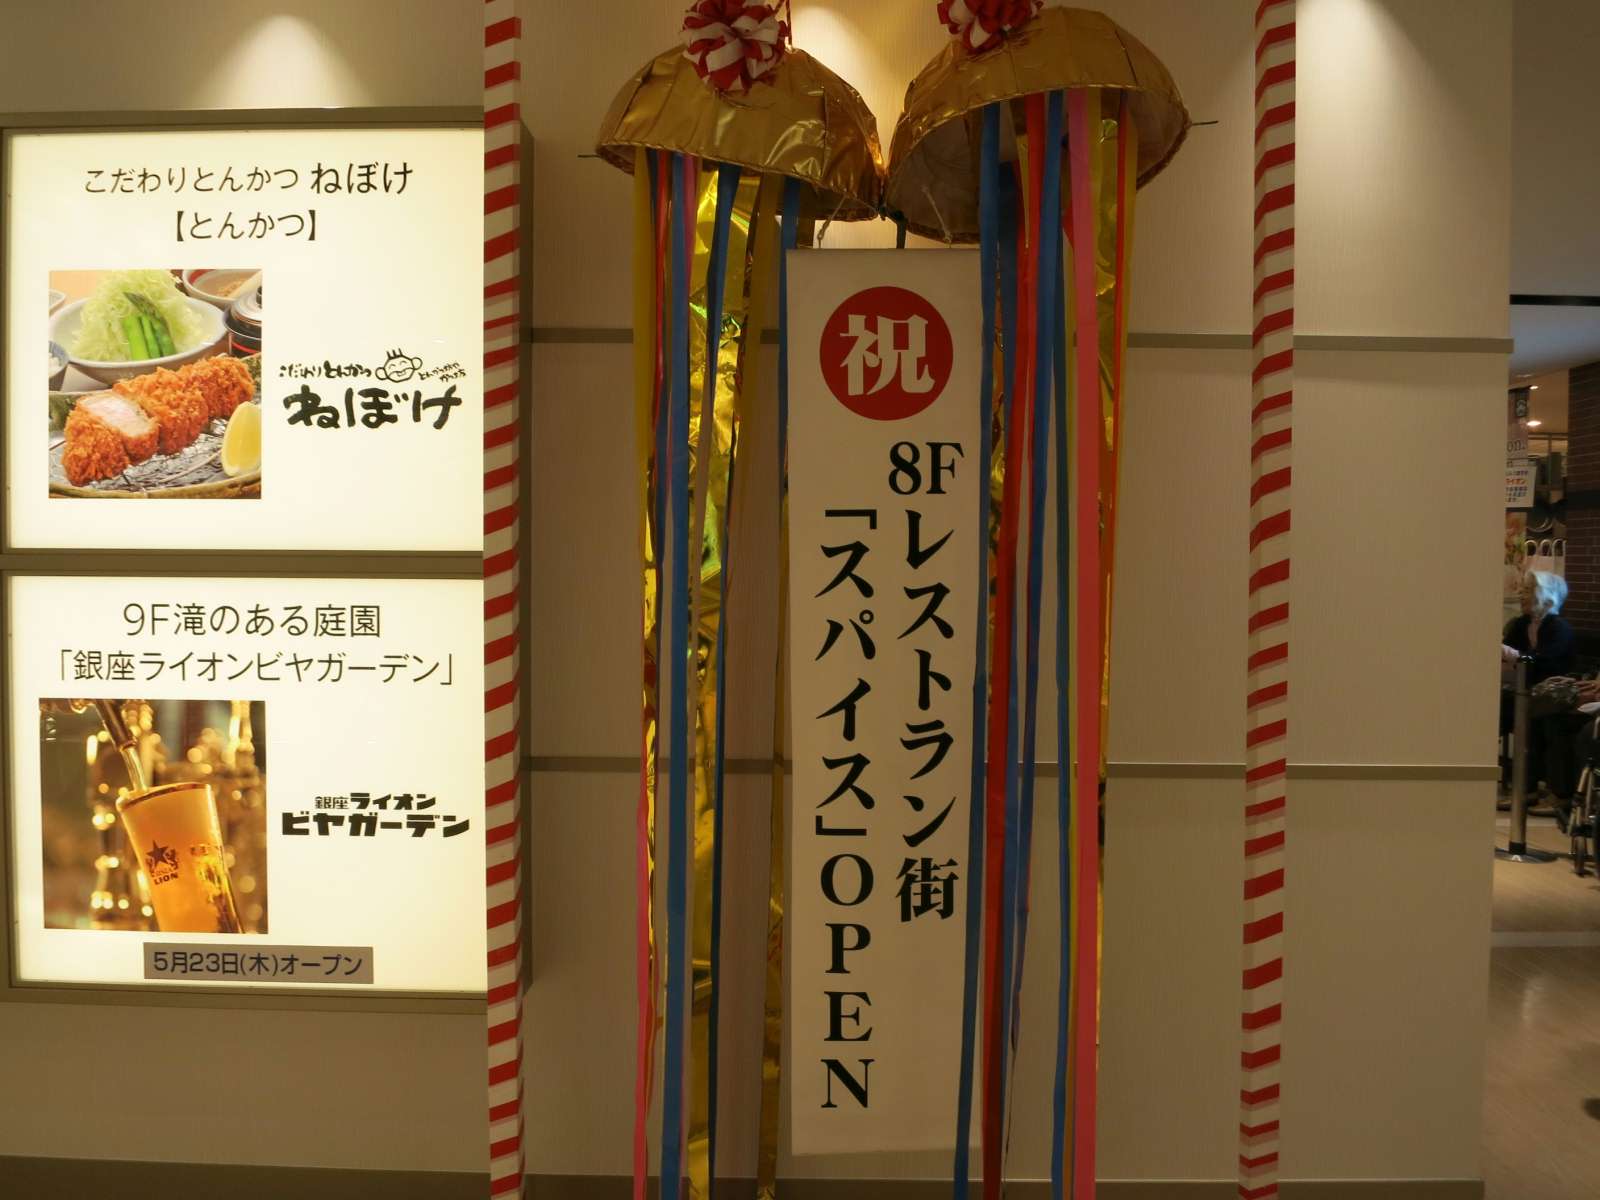 The Kaien 東武宇都宮百貨店8fレストラン街 とち フラ